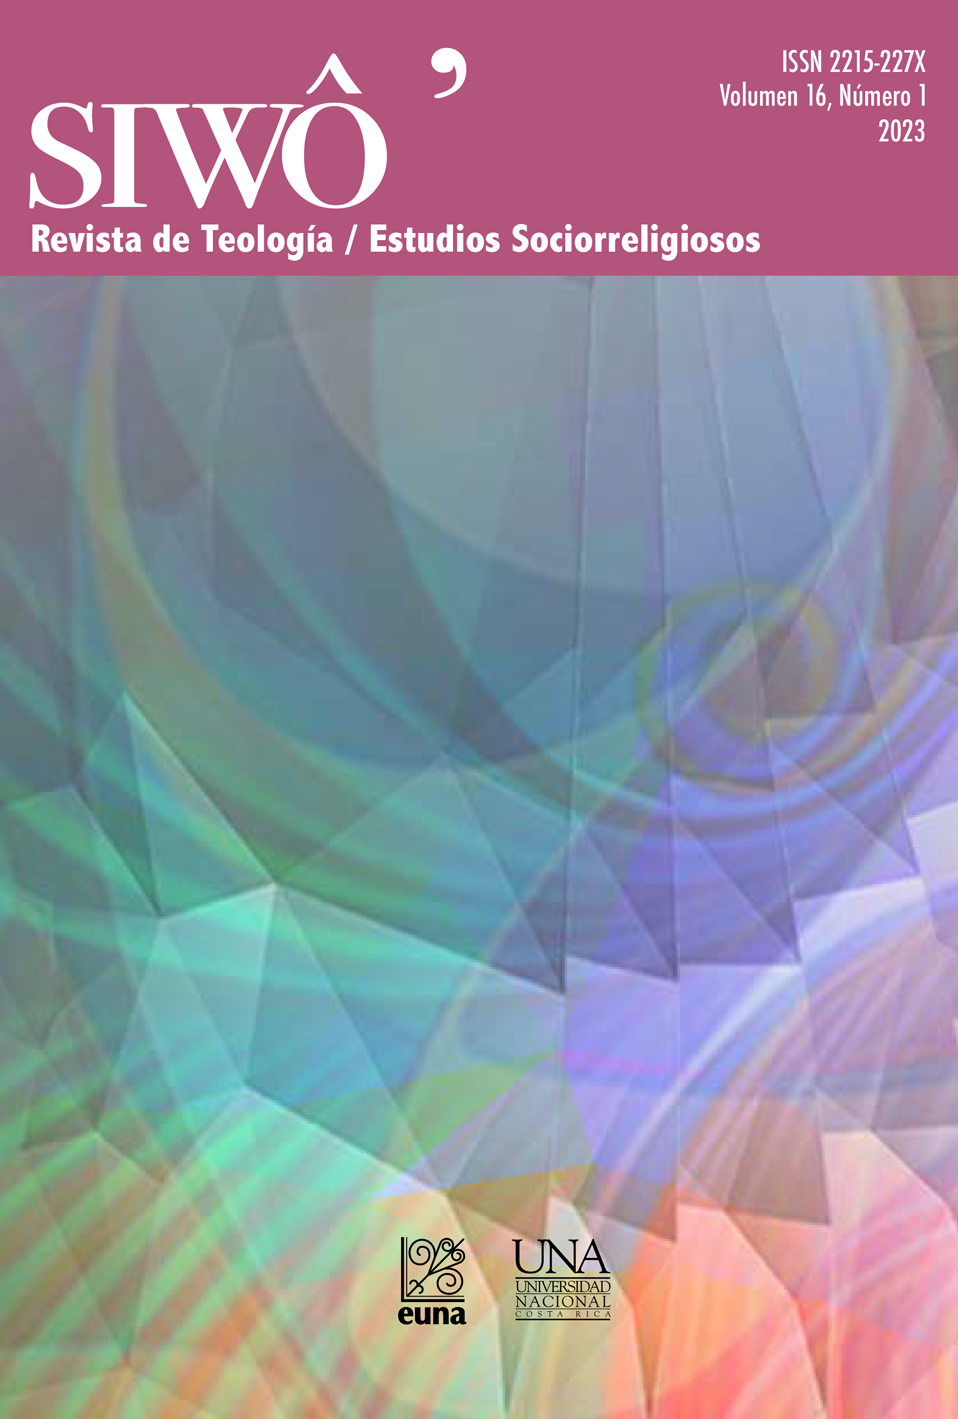 SIWÔ' Revista de Teología/Revista de Estudios Sociorreligiosos, presenta el Volumen 16. Número 1. (2023)